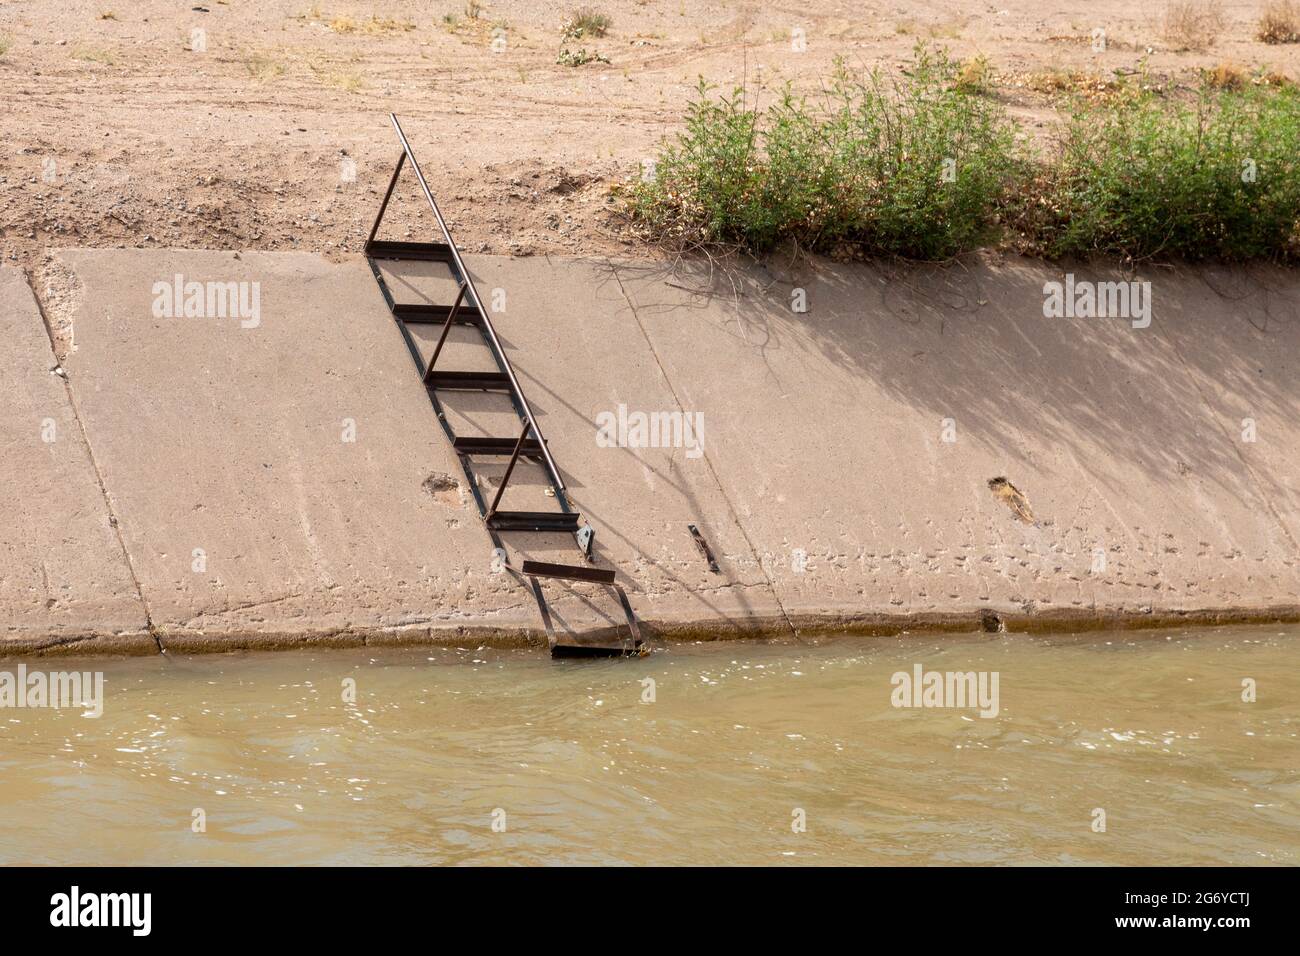 Algodones, New Mexico - UNA scala su un canale di irrigazione permette di scappare sui lati ripidi se qualcuno cade nel canale. Foto Stock